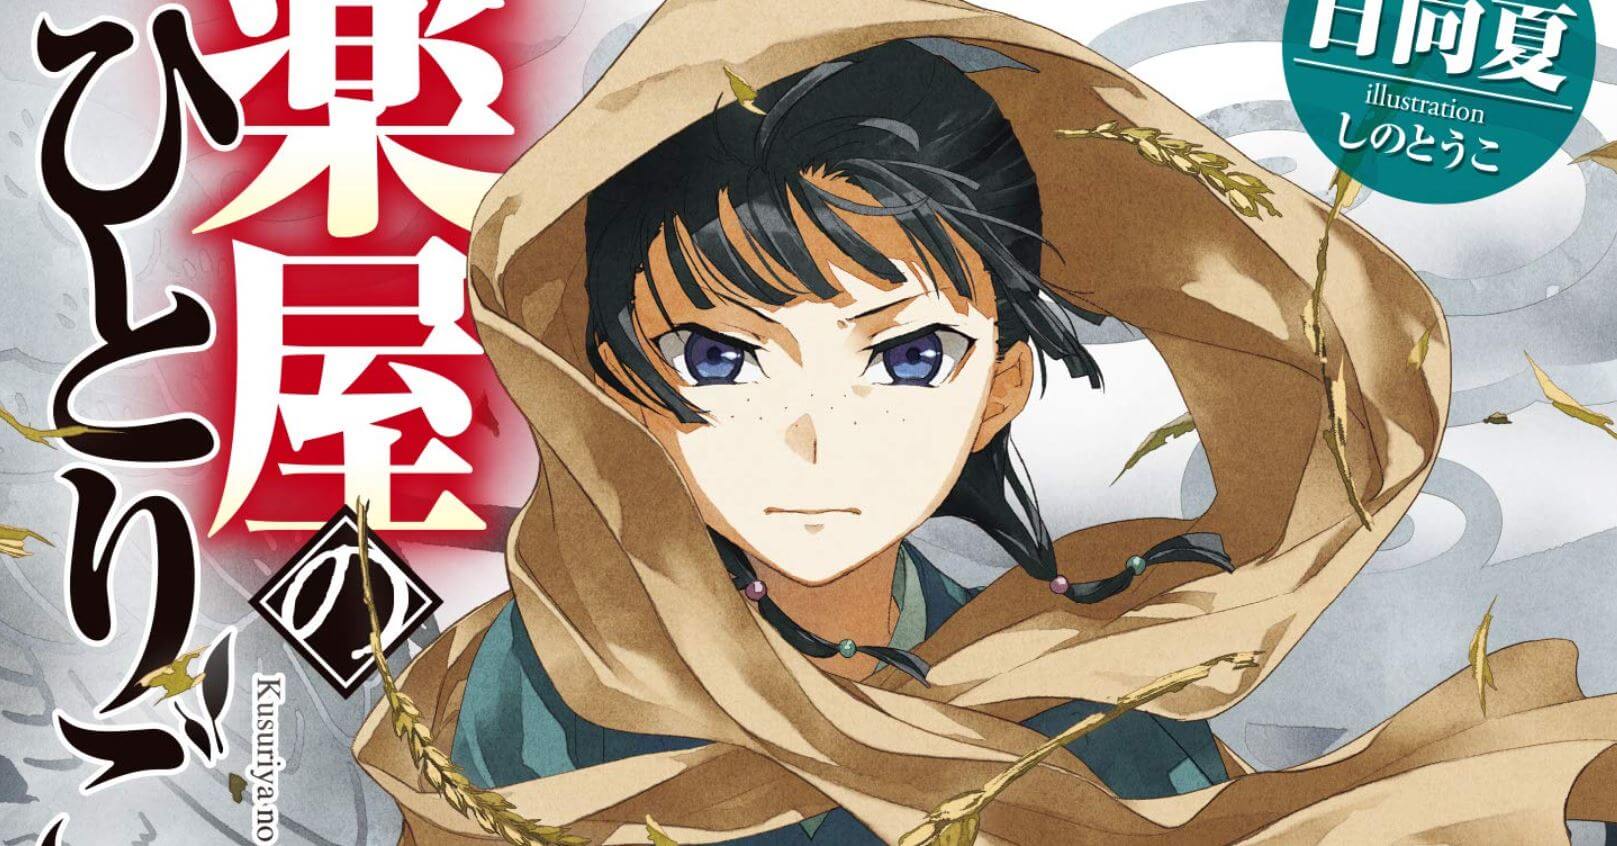 Penjualan Novel & Manga Kusuriya no Hitorigoto Mencapai 12 Juta Eksemplar